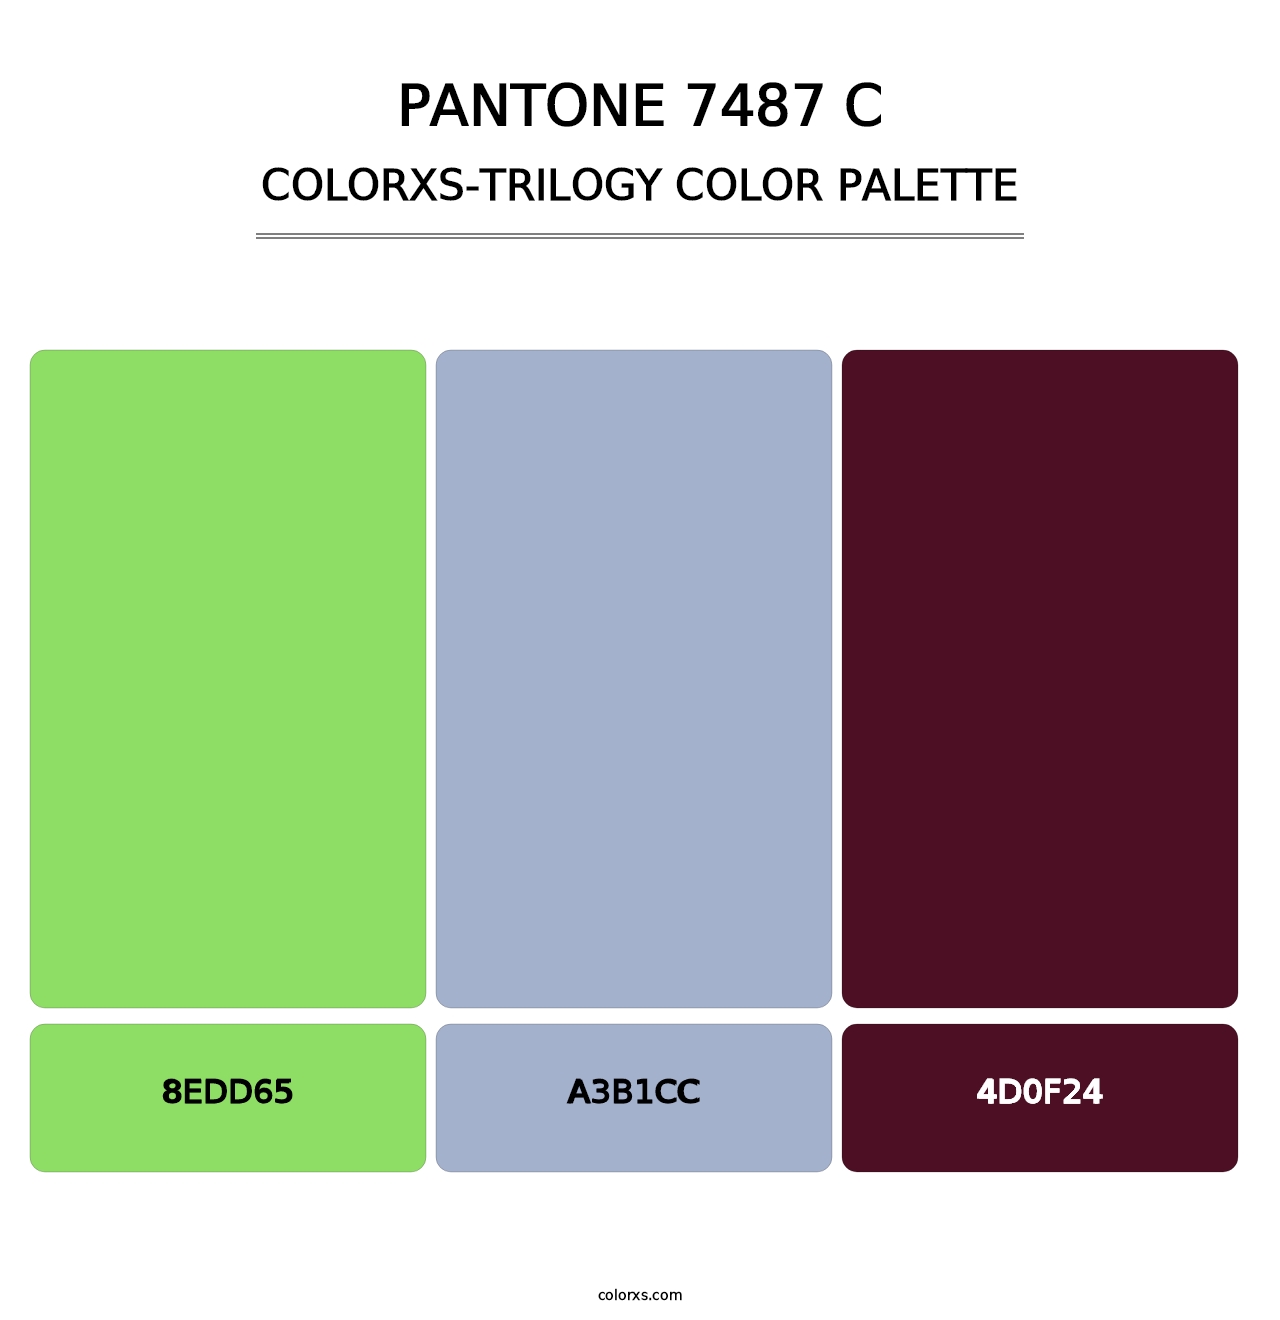 PANTONE 7487 C - Colorxs Trilogy Palette